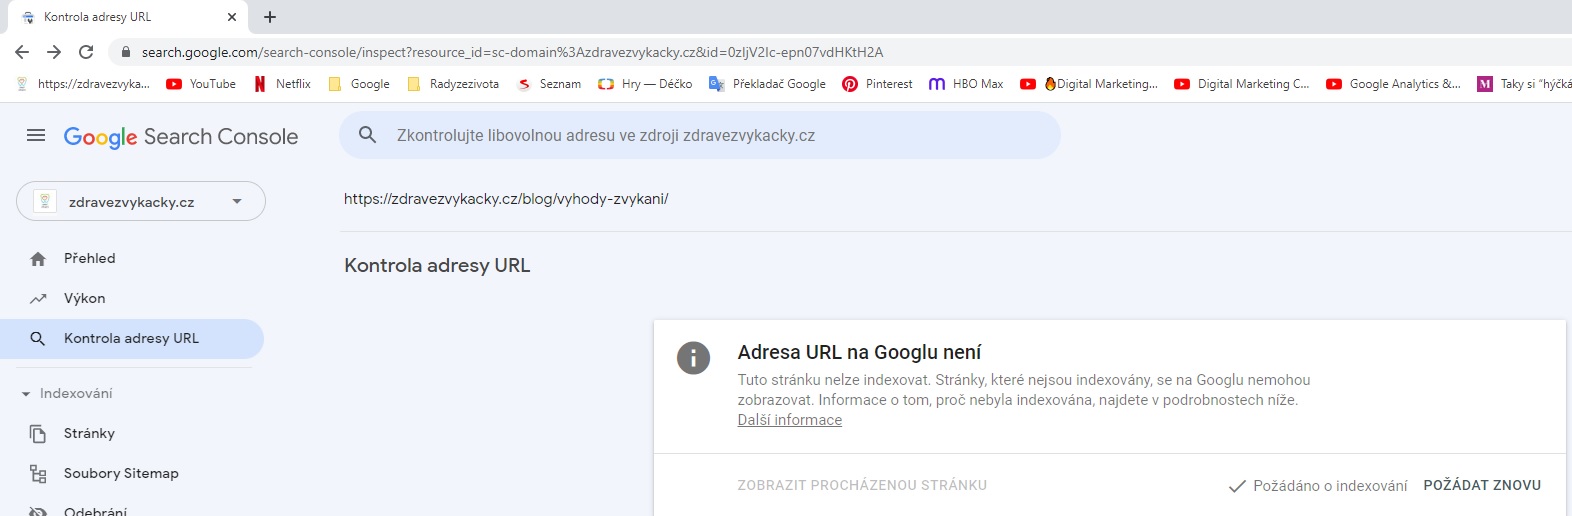 Urychlení indexace stránek pomocí Google Search Console, zdroj: radyzezivota.cz